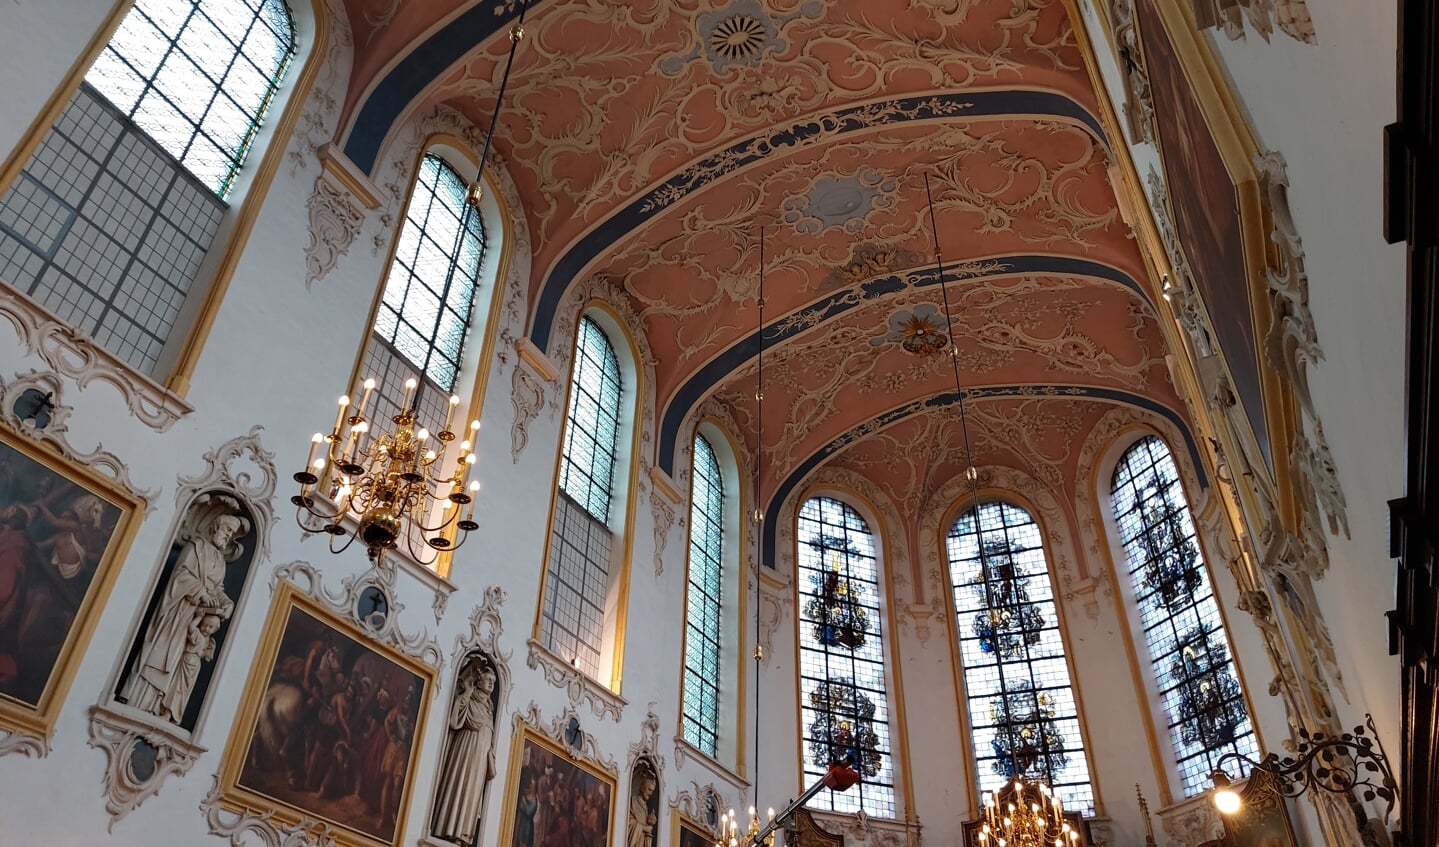 De Caroluskapel is onderdeel van het laatste kartuizerklooster in Nederland en een van de drie kerken met rococo-architectuur in ons land